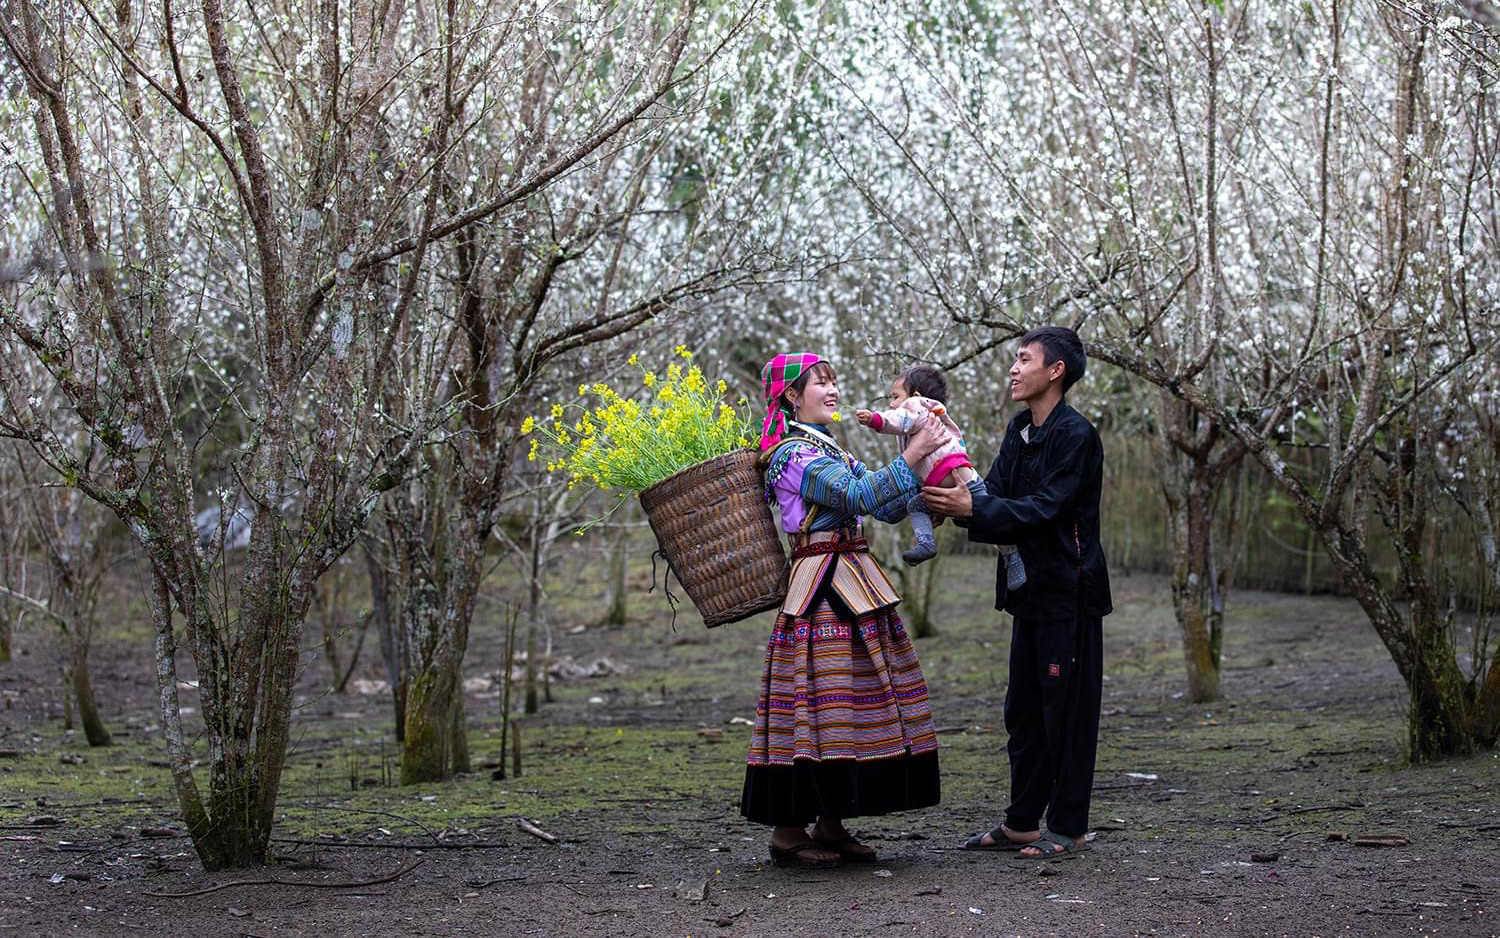 Tả Van Chư – Lặng người ngắm nhìn mùa hoa mận nở trắng một rẻo vùng cao